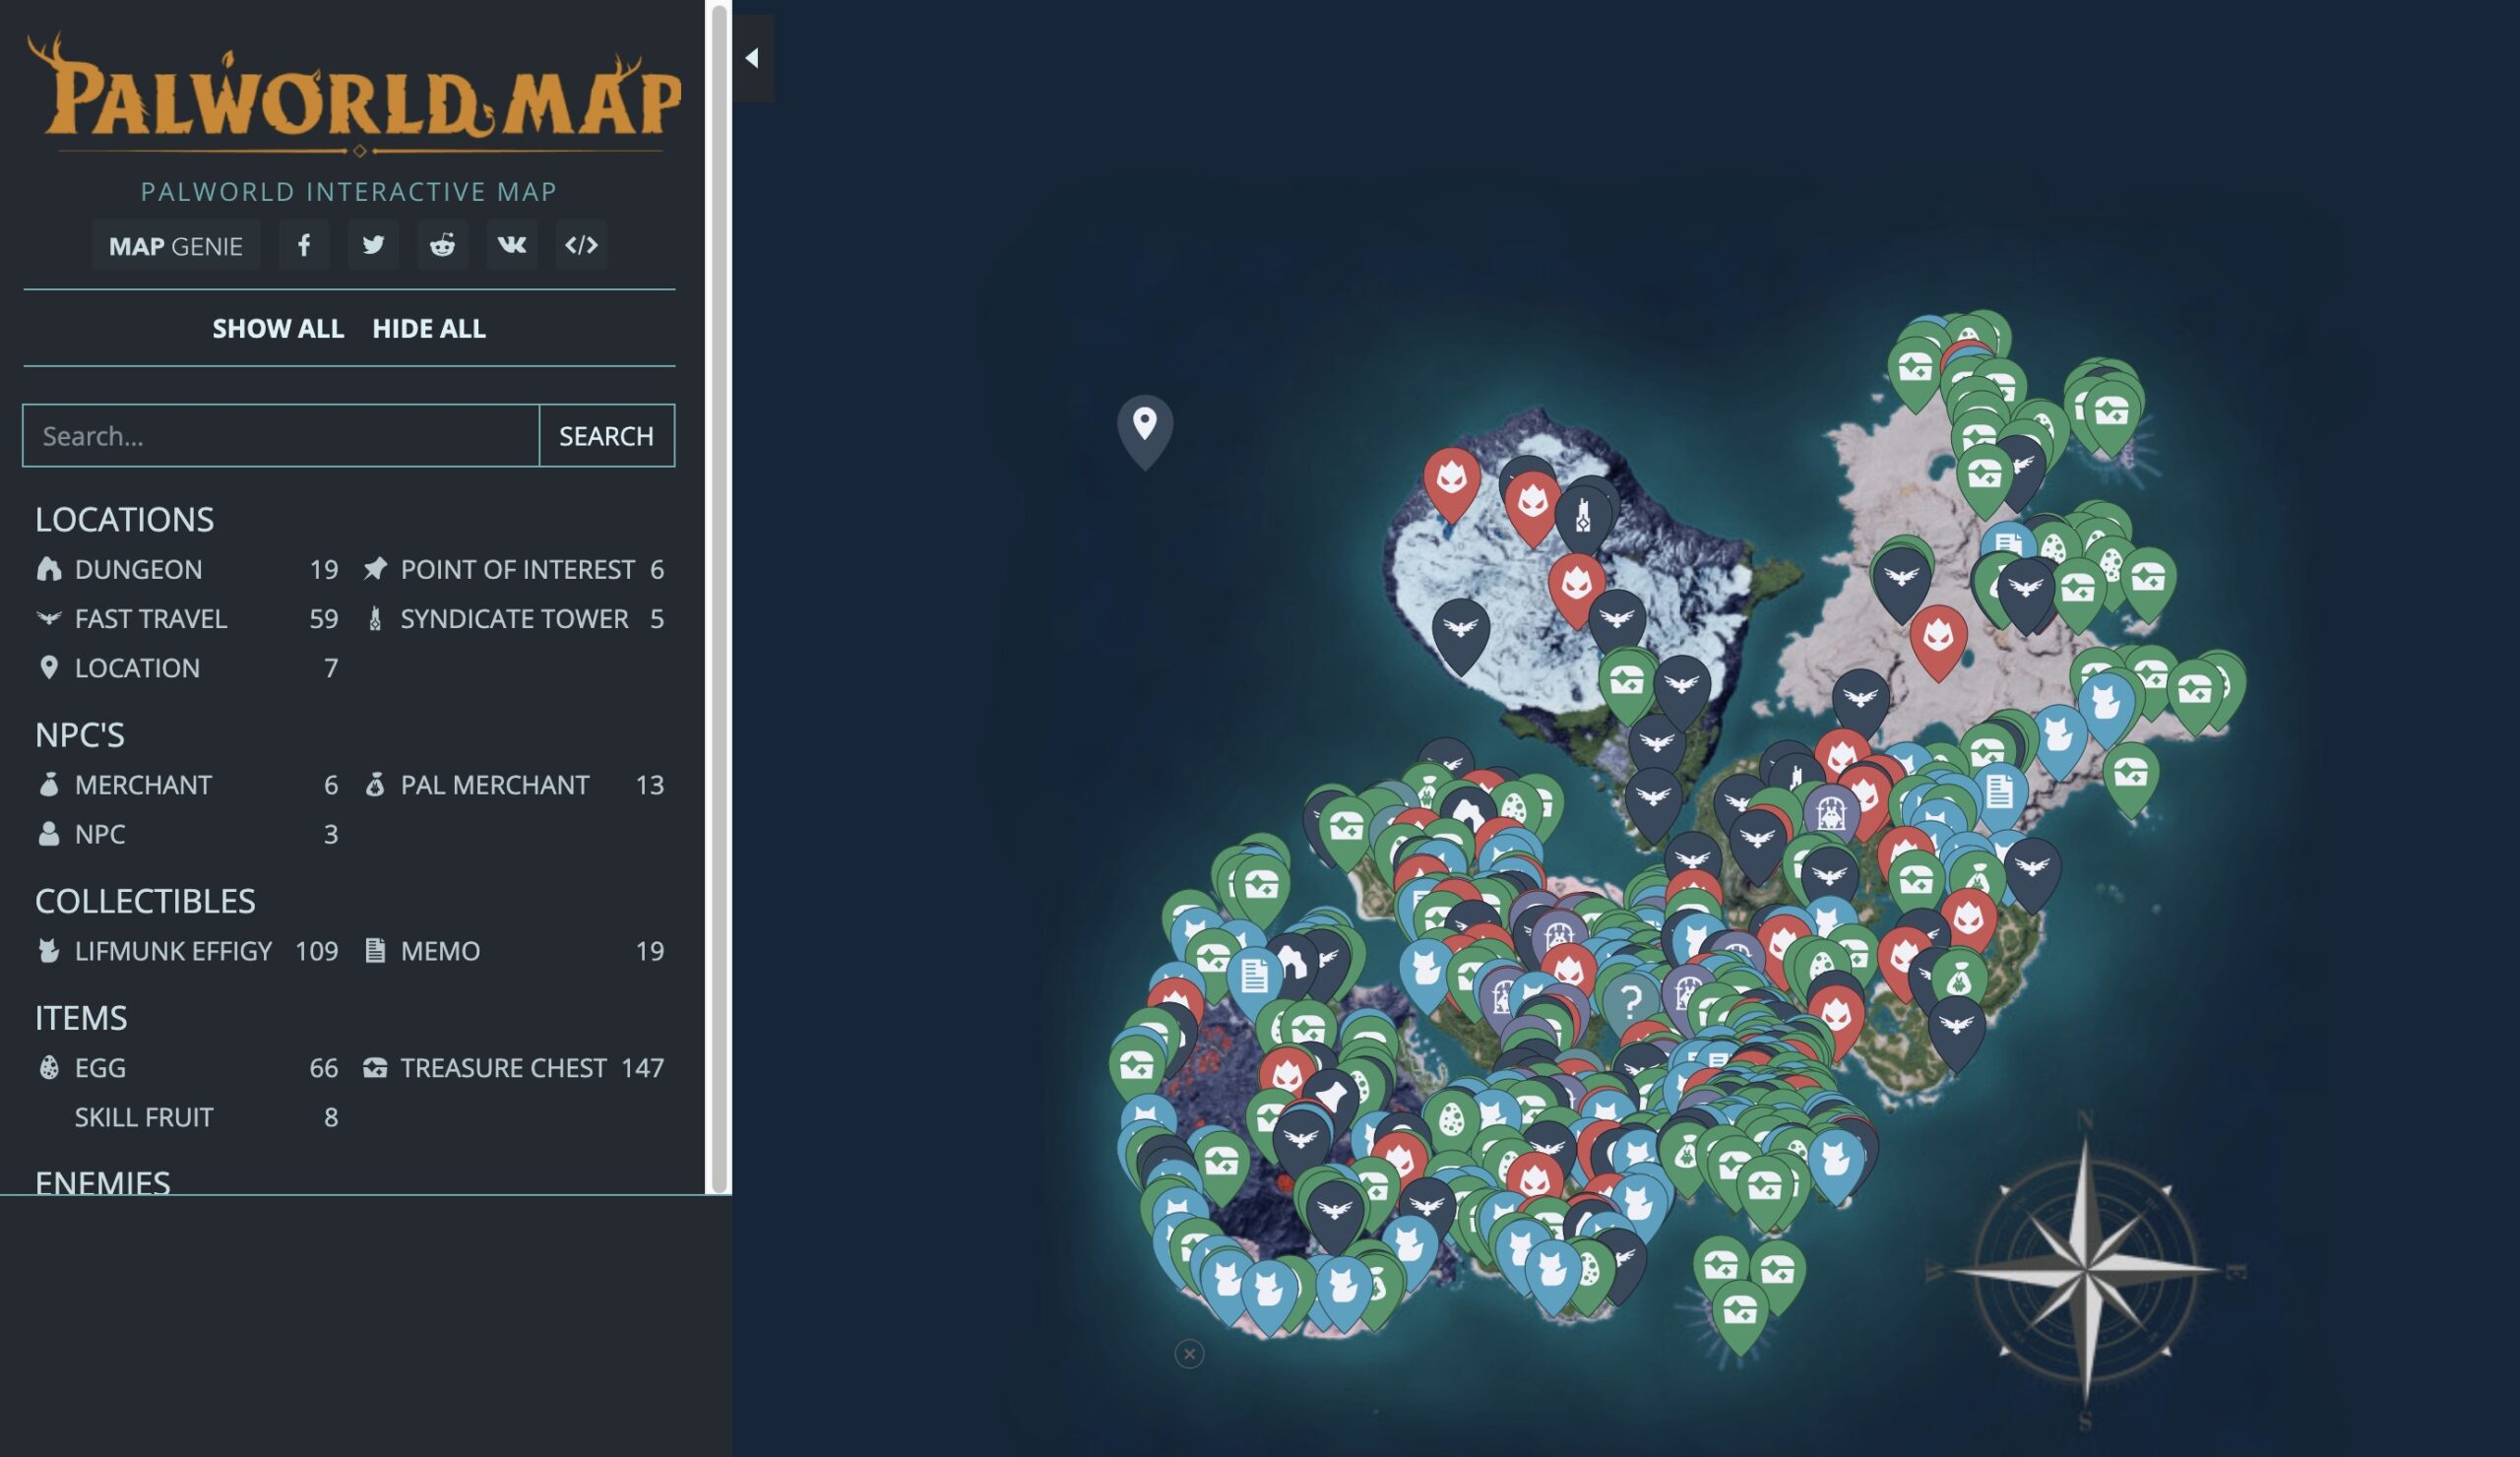 Интерактивная карта Palworld стала доступна в сети: с сайта NEWXBOXONE.RU